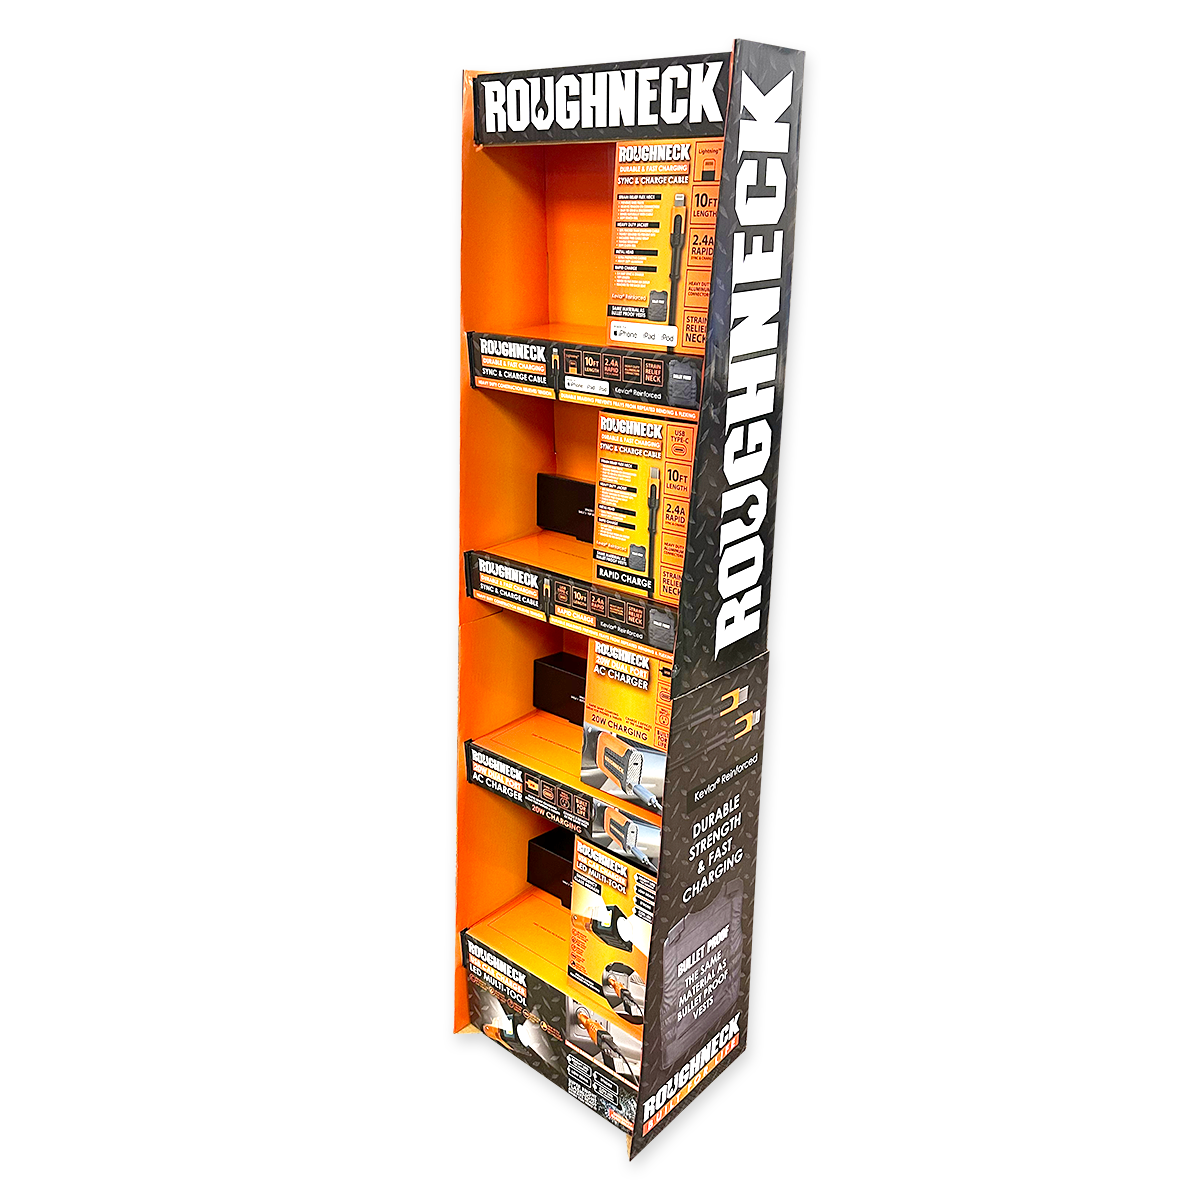 Merchandising Fixture - Corrugated Roughneck Tech Floor Display ONLY 977900